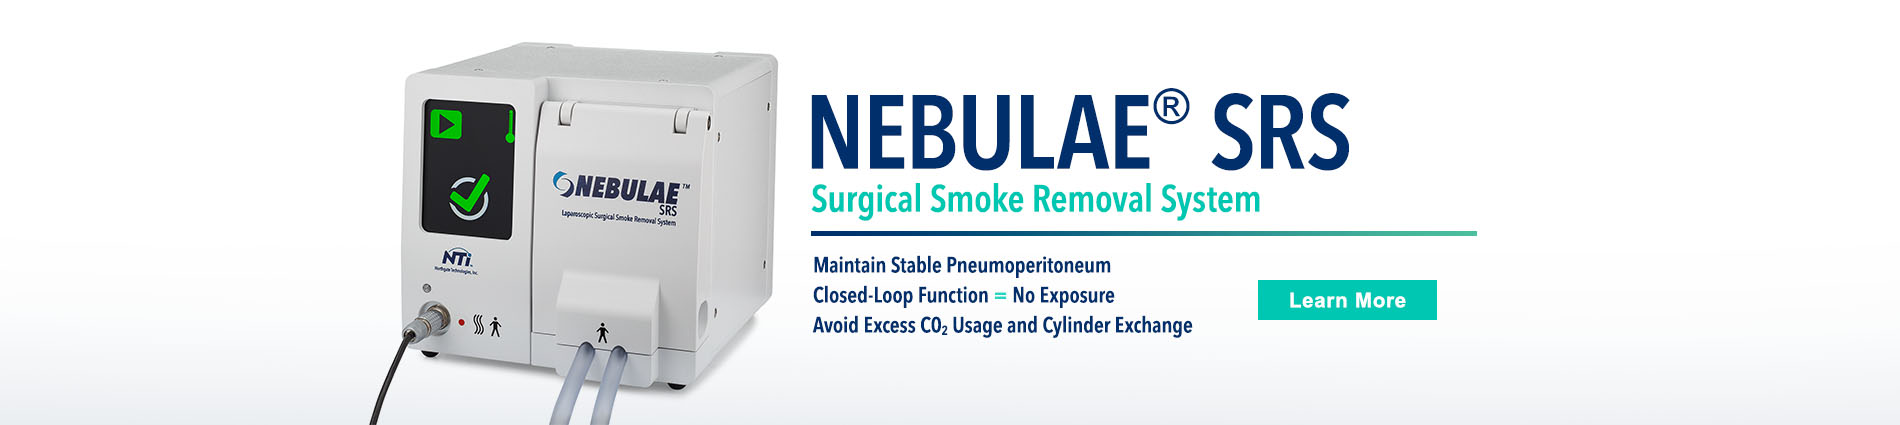 NEBULA SRS Surgical Smoke Removal System